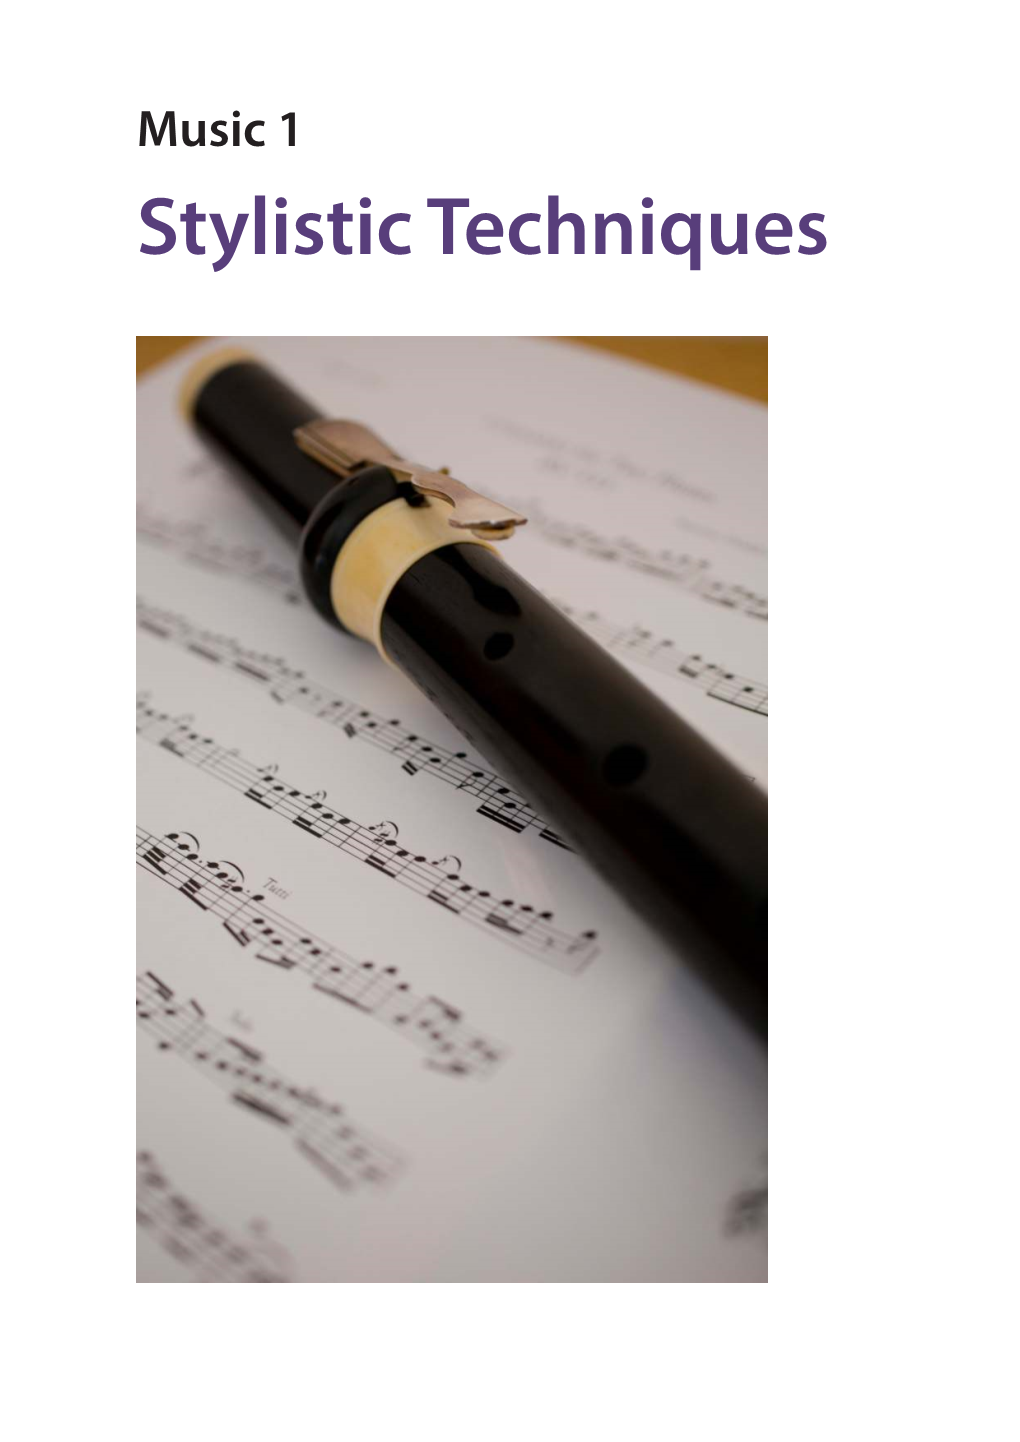 Music 1: Stylistic Techniques Contents